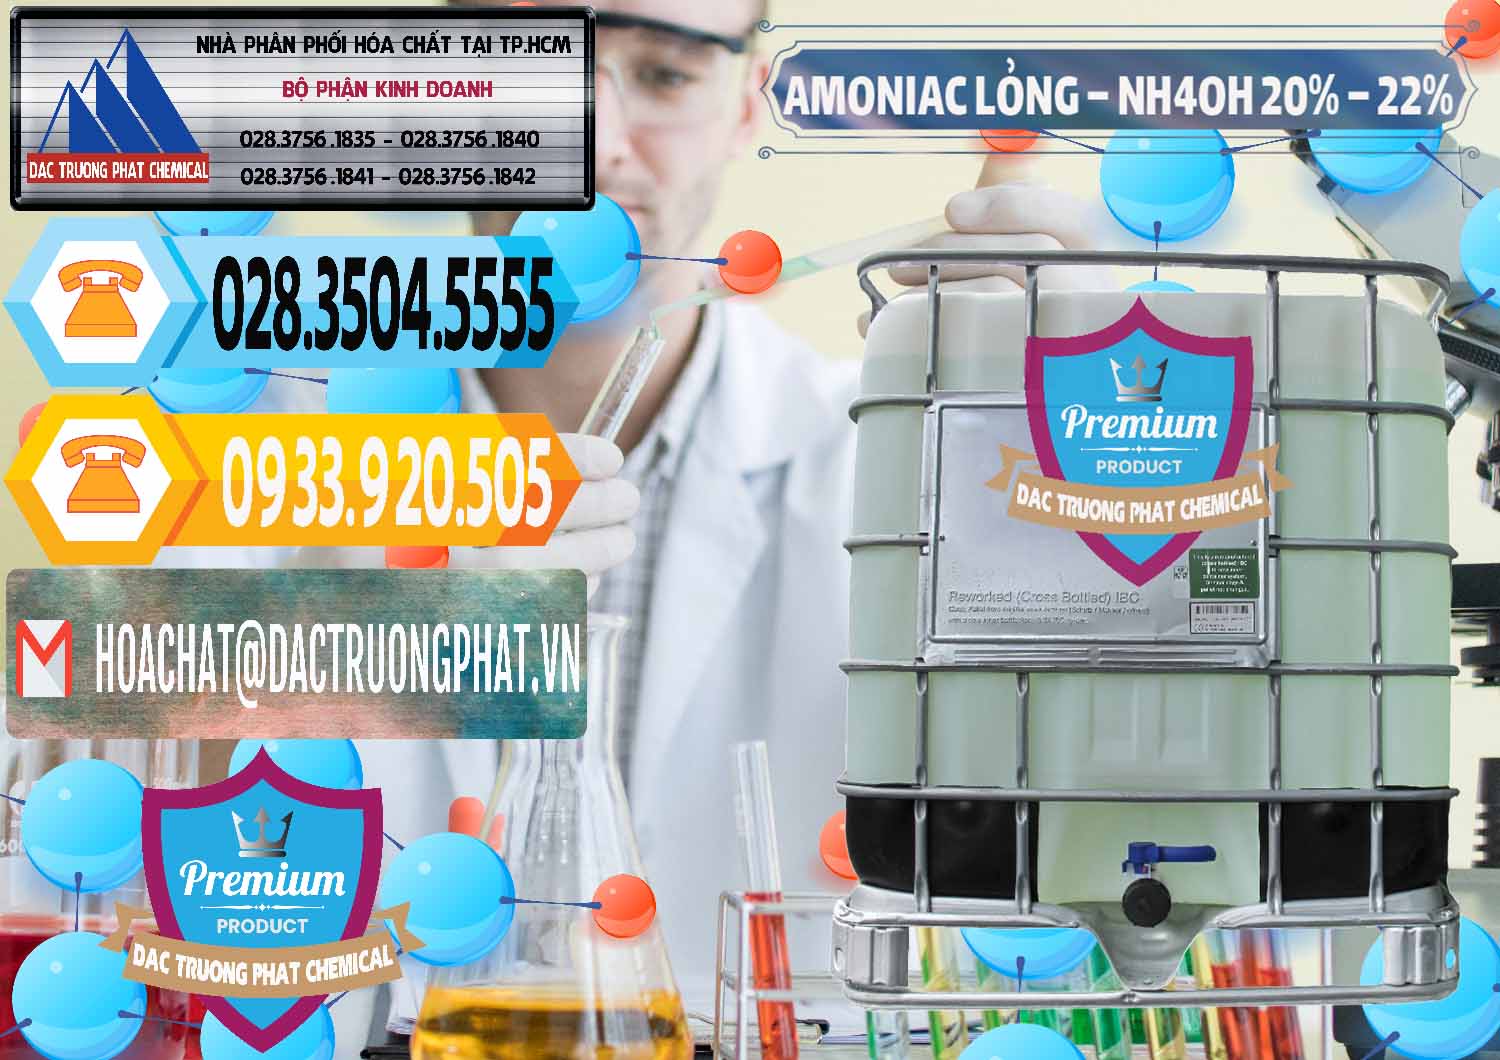 Nơi chuyên cung ứng _ bán Amoniac Lỏng – NH4OH 20% – 22% Việt Nam - 0185 - Đơn vị bán - cung cấp hóa chất tại TP.HCM - hoachattayrua.net